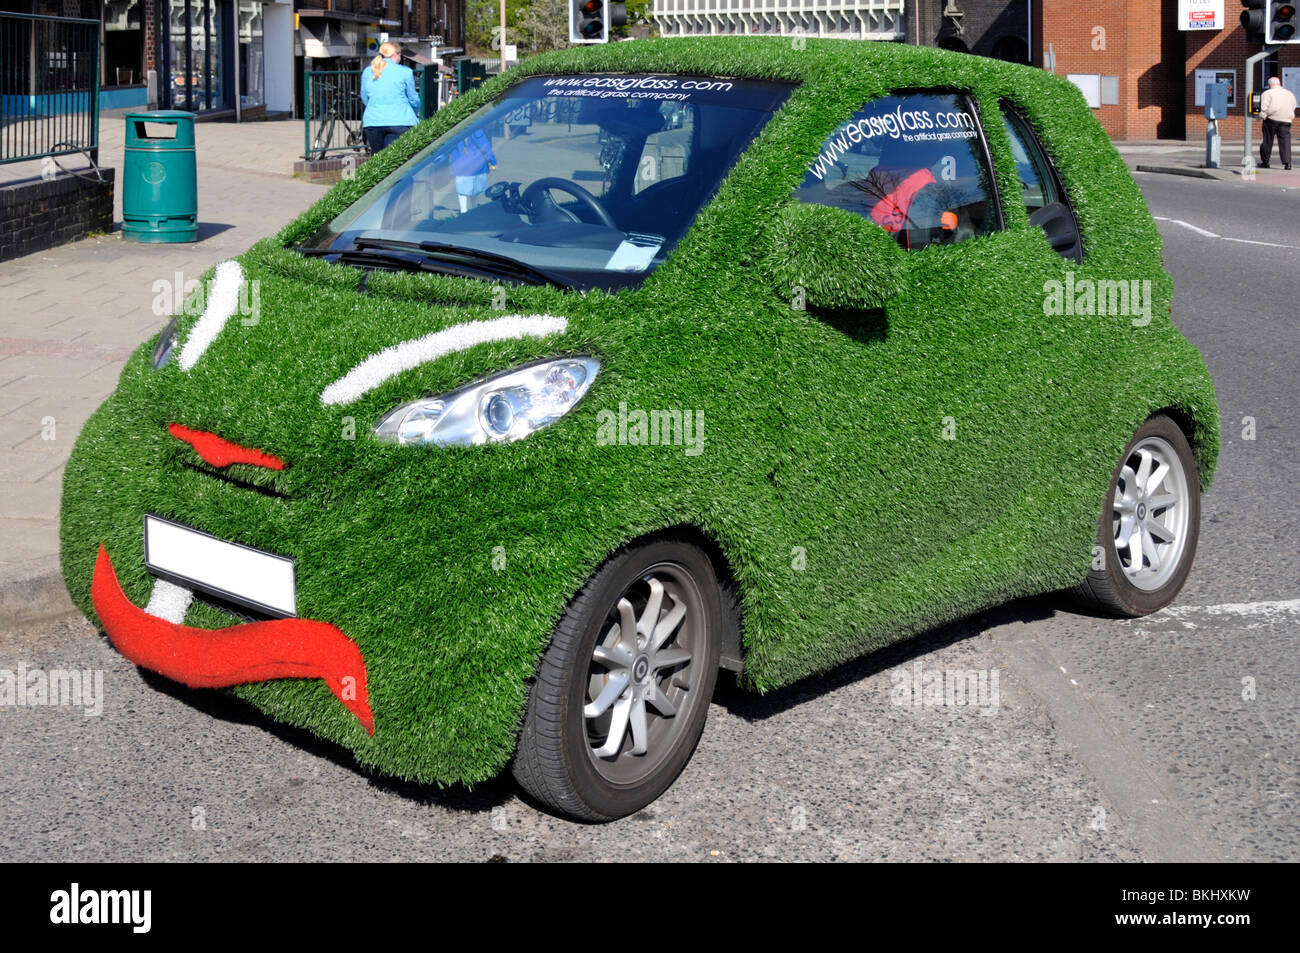 Smart car couvert de gazon artificiel et de la publicité Banque D'Images